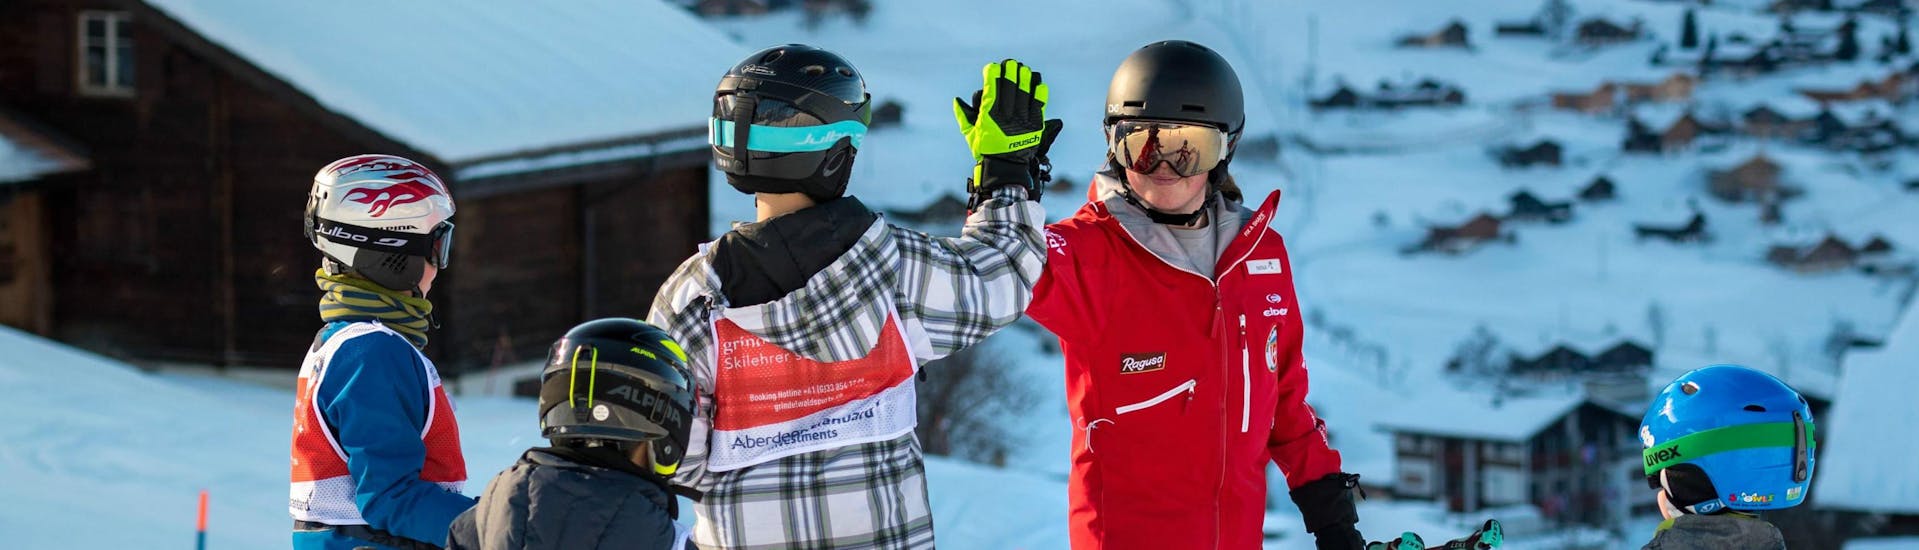 Cours de ski Enfants (6-15 ans) pour Skieurs avancés.